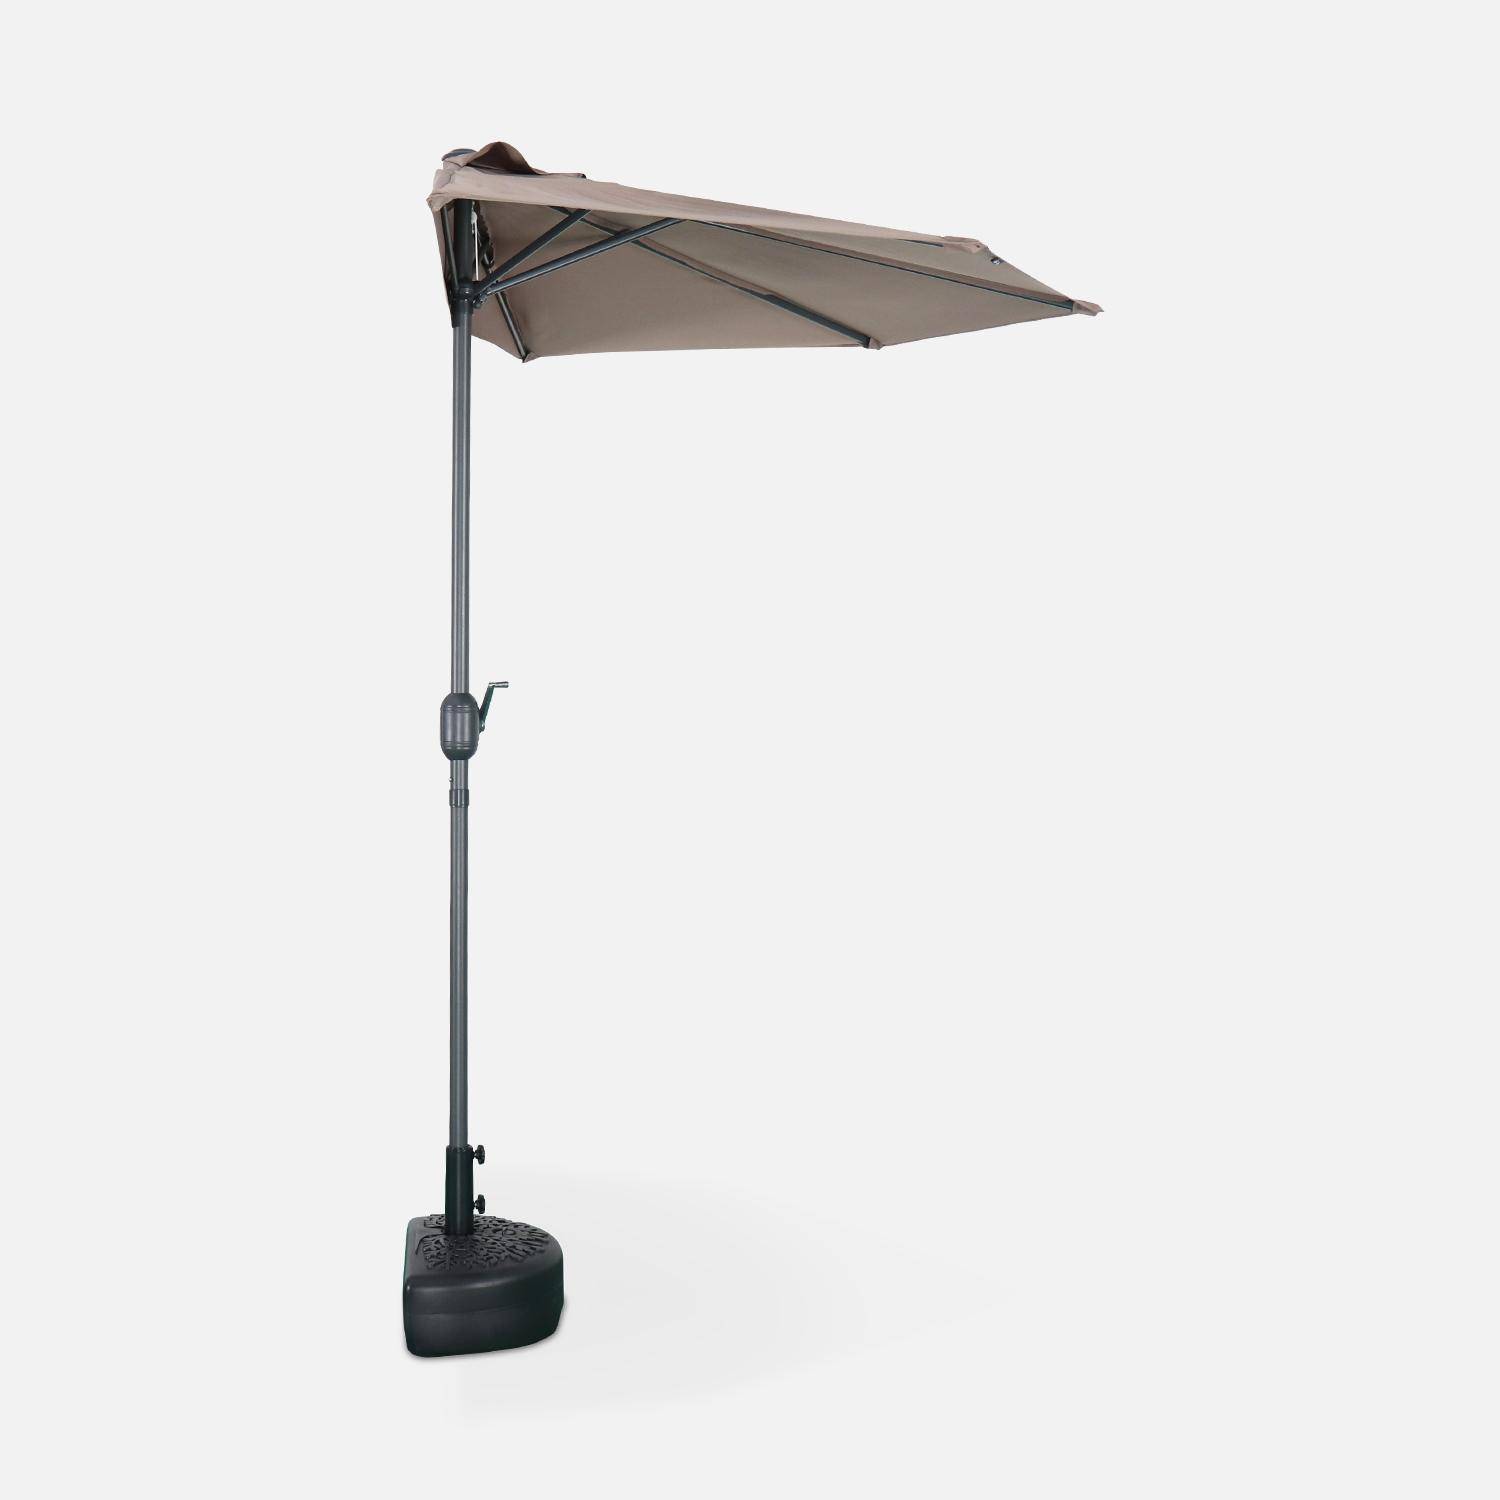  Parasol para balcón Ø250cm  – CALVI – Pequeño parasol recto, mástil en aluminio con manivela, tela color pardo  Photo4